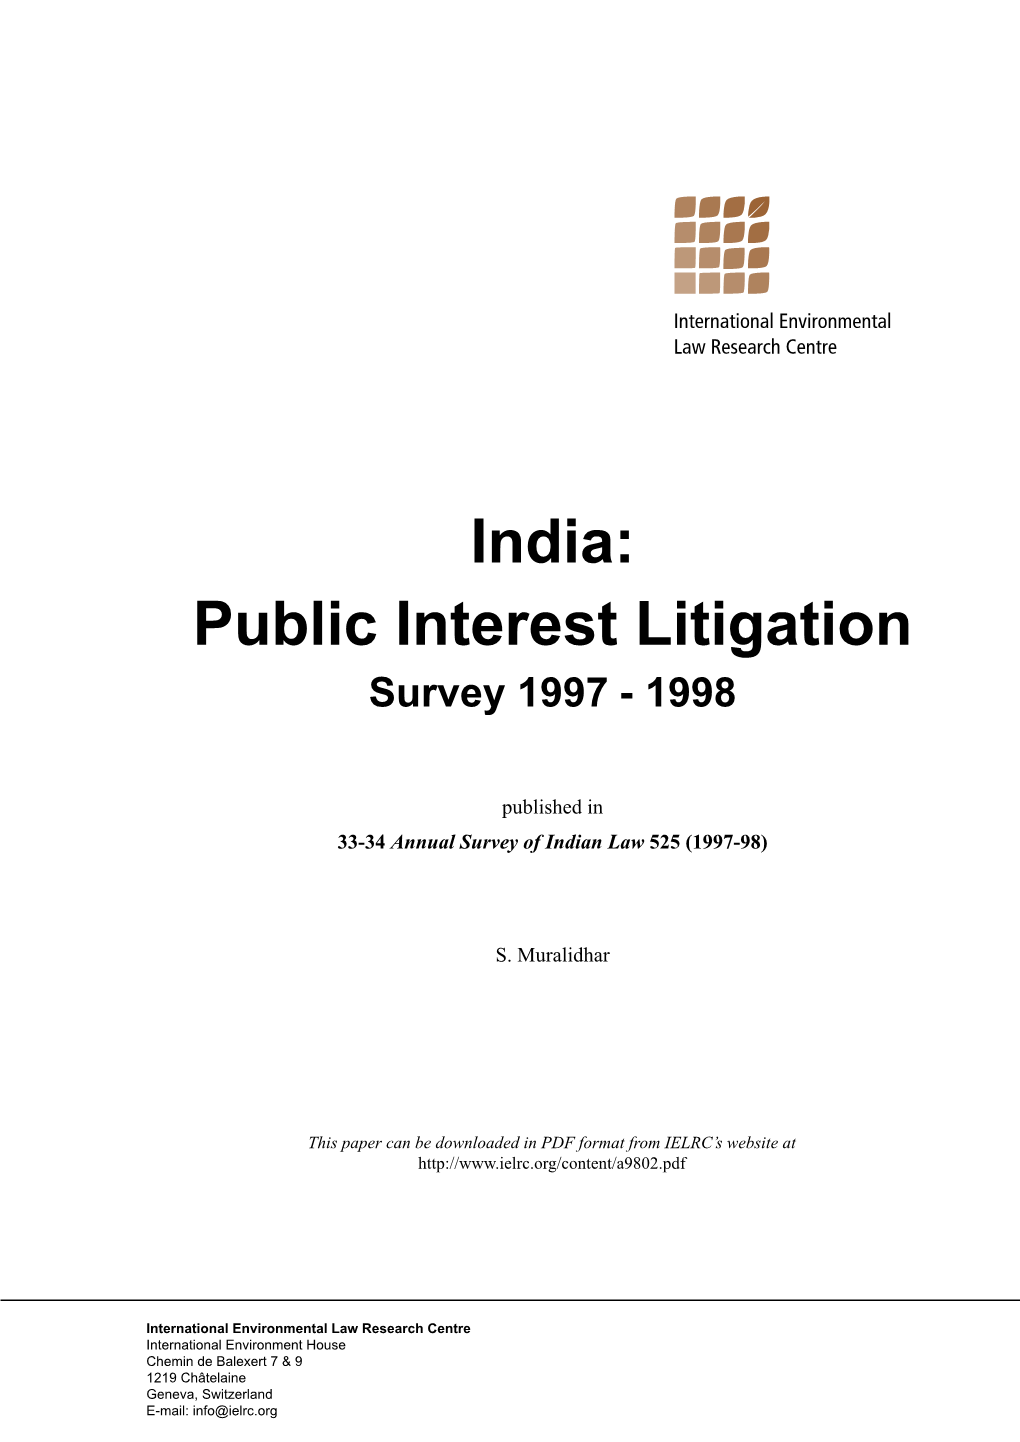 Public Interest Litigation Survey 1997 - 1998